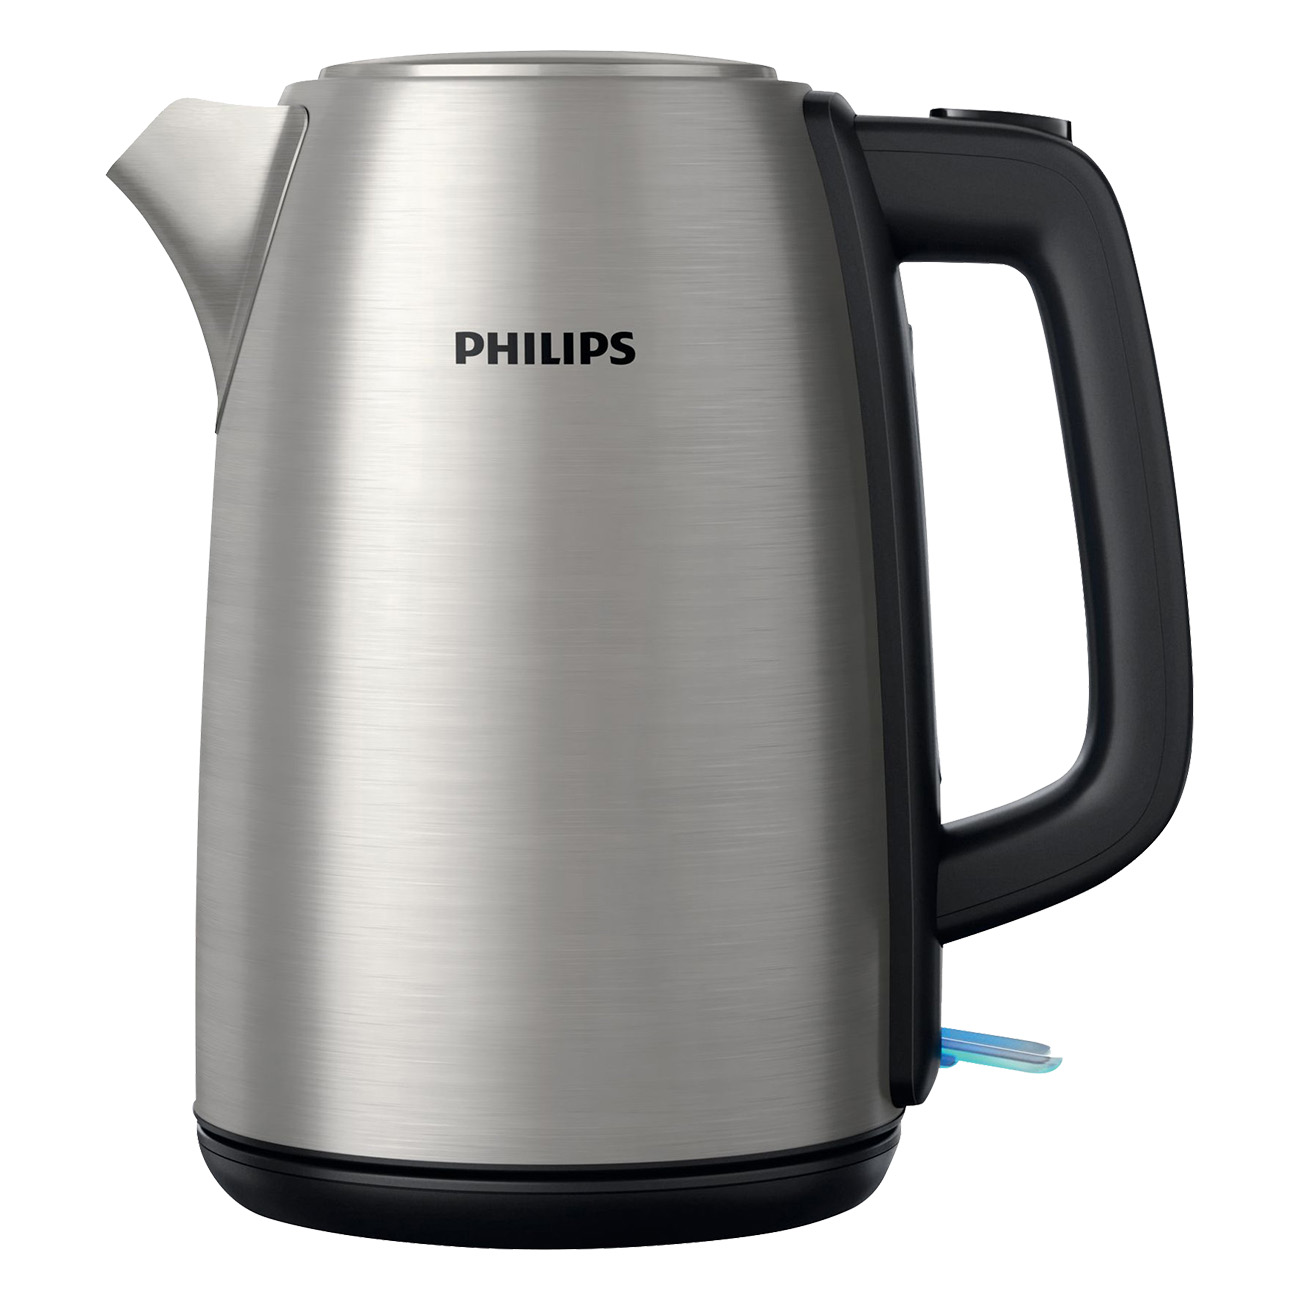 Philips Daily Collection HD9351/90 Edelstahl | Wasserkocher | 2200 Watt | 1.7 Liter Fassungsvermögen | Abschaltautomatik | Deckelöffnung per Knopfdruck